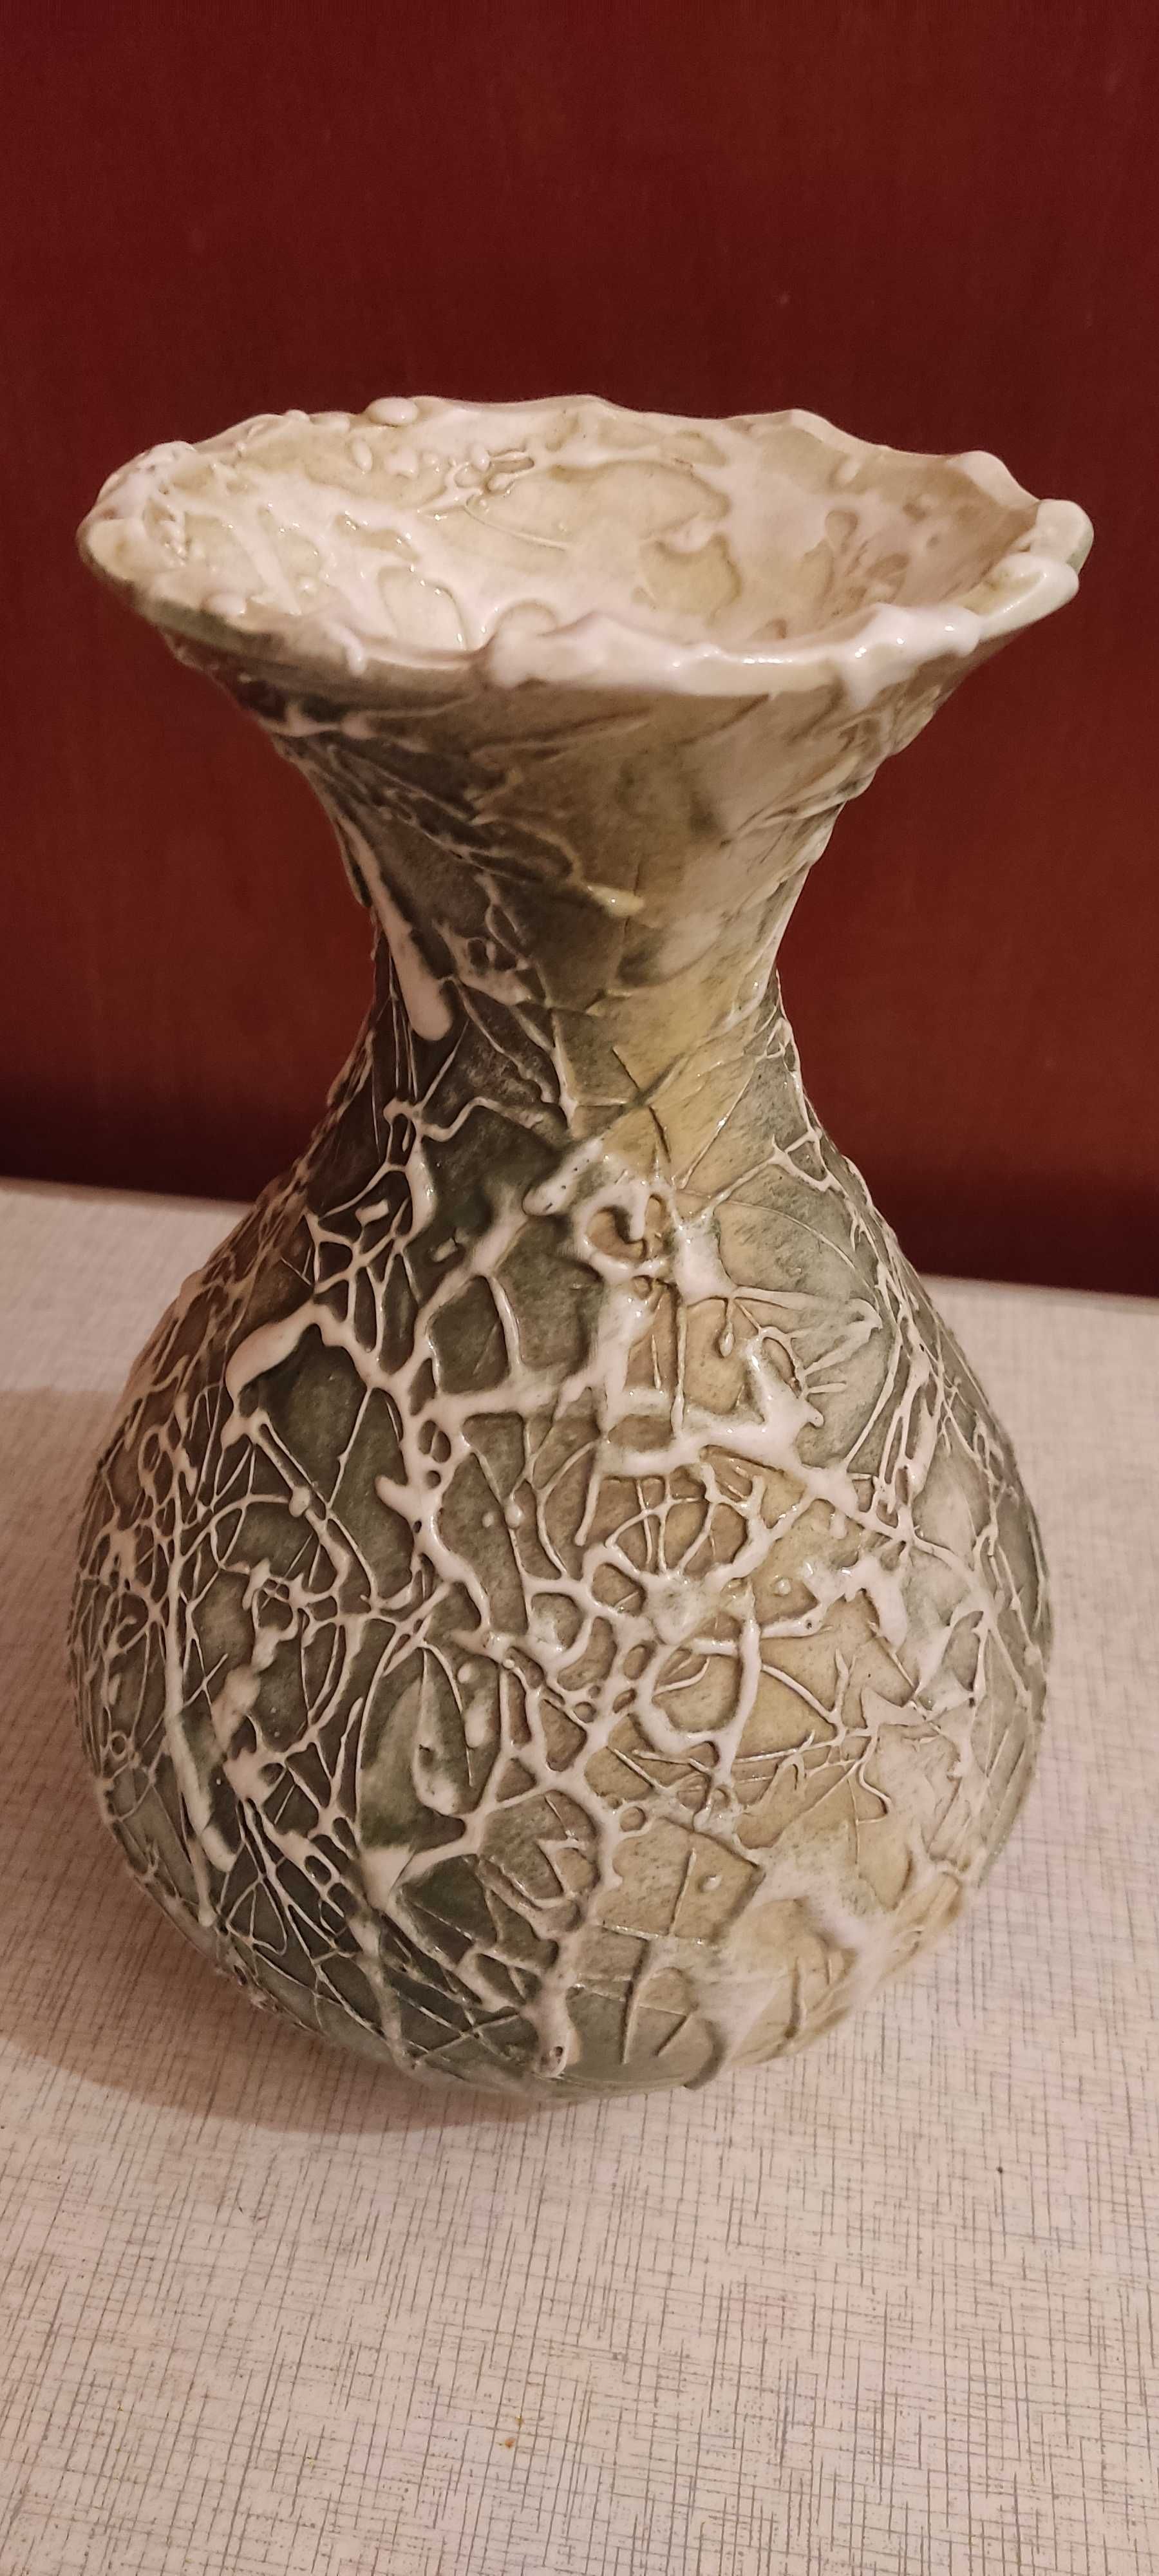 Ръчно декорирана керамична ваза. Височина 27 см.